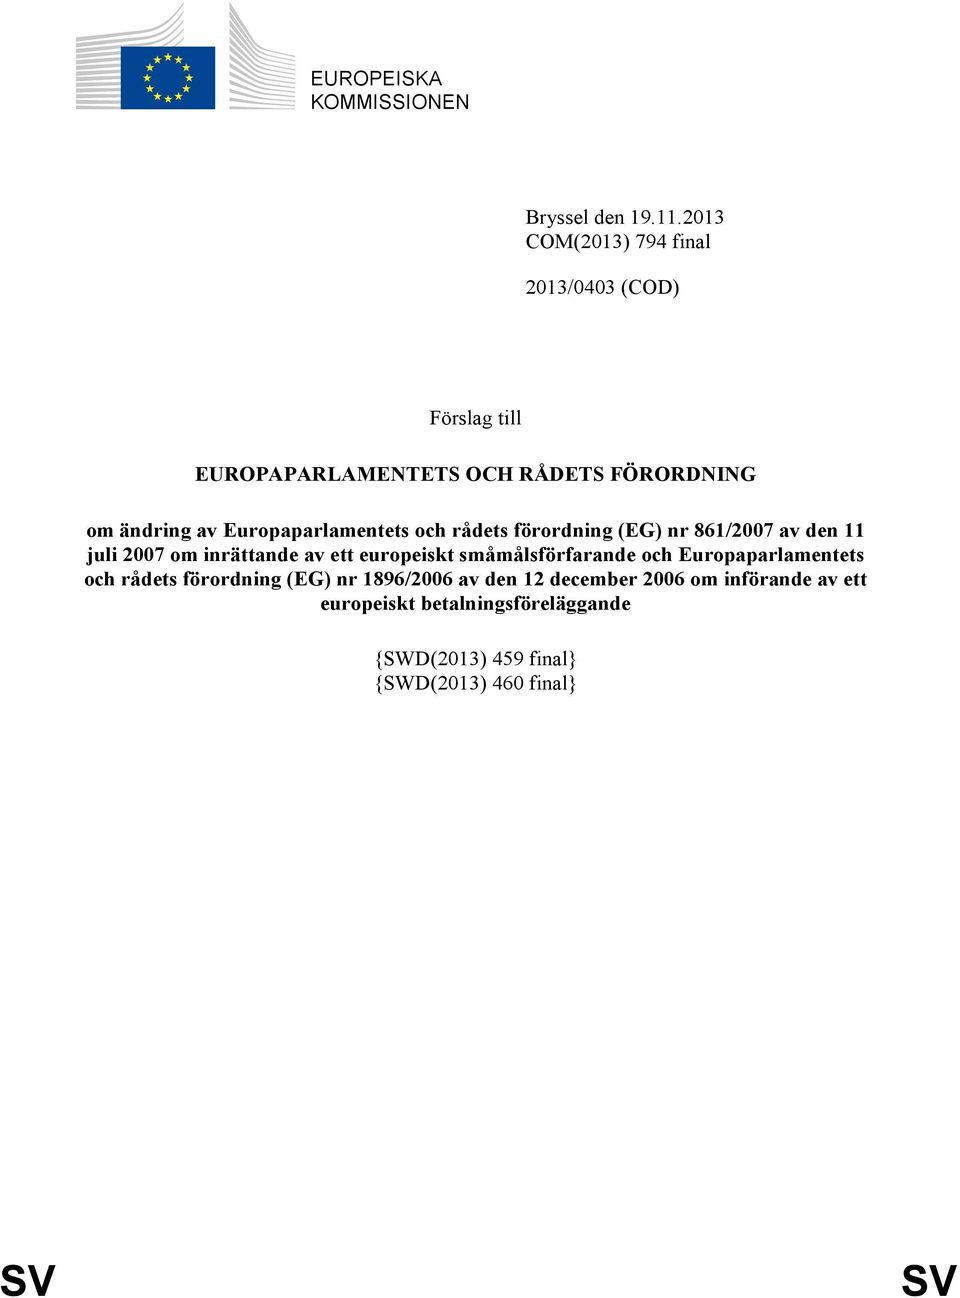 Europaparlamentets och rådets förordning (EG) nr 861/2007 av den 11 juli 2007 om inrättande av ett europeiskt